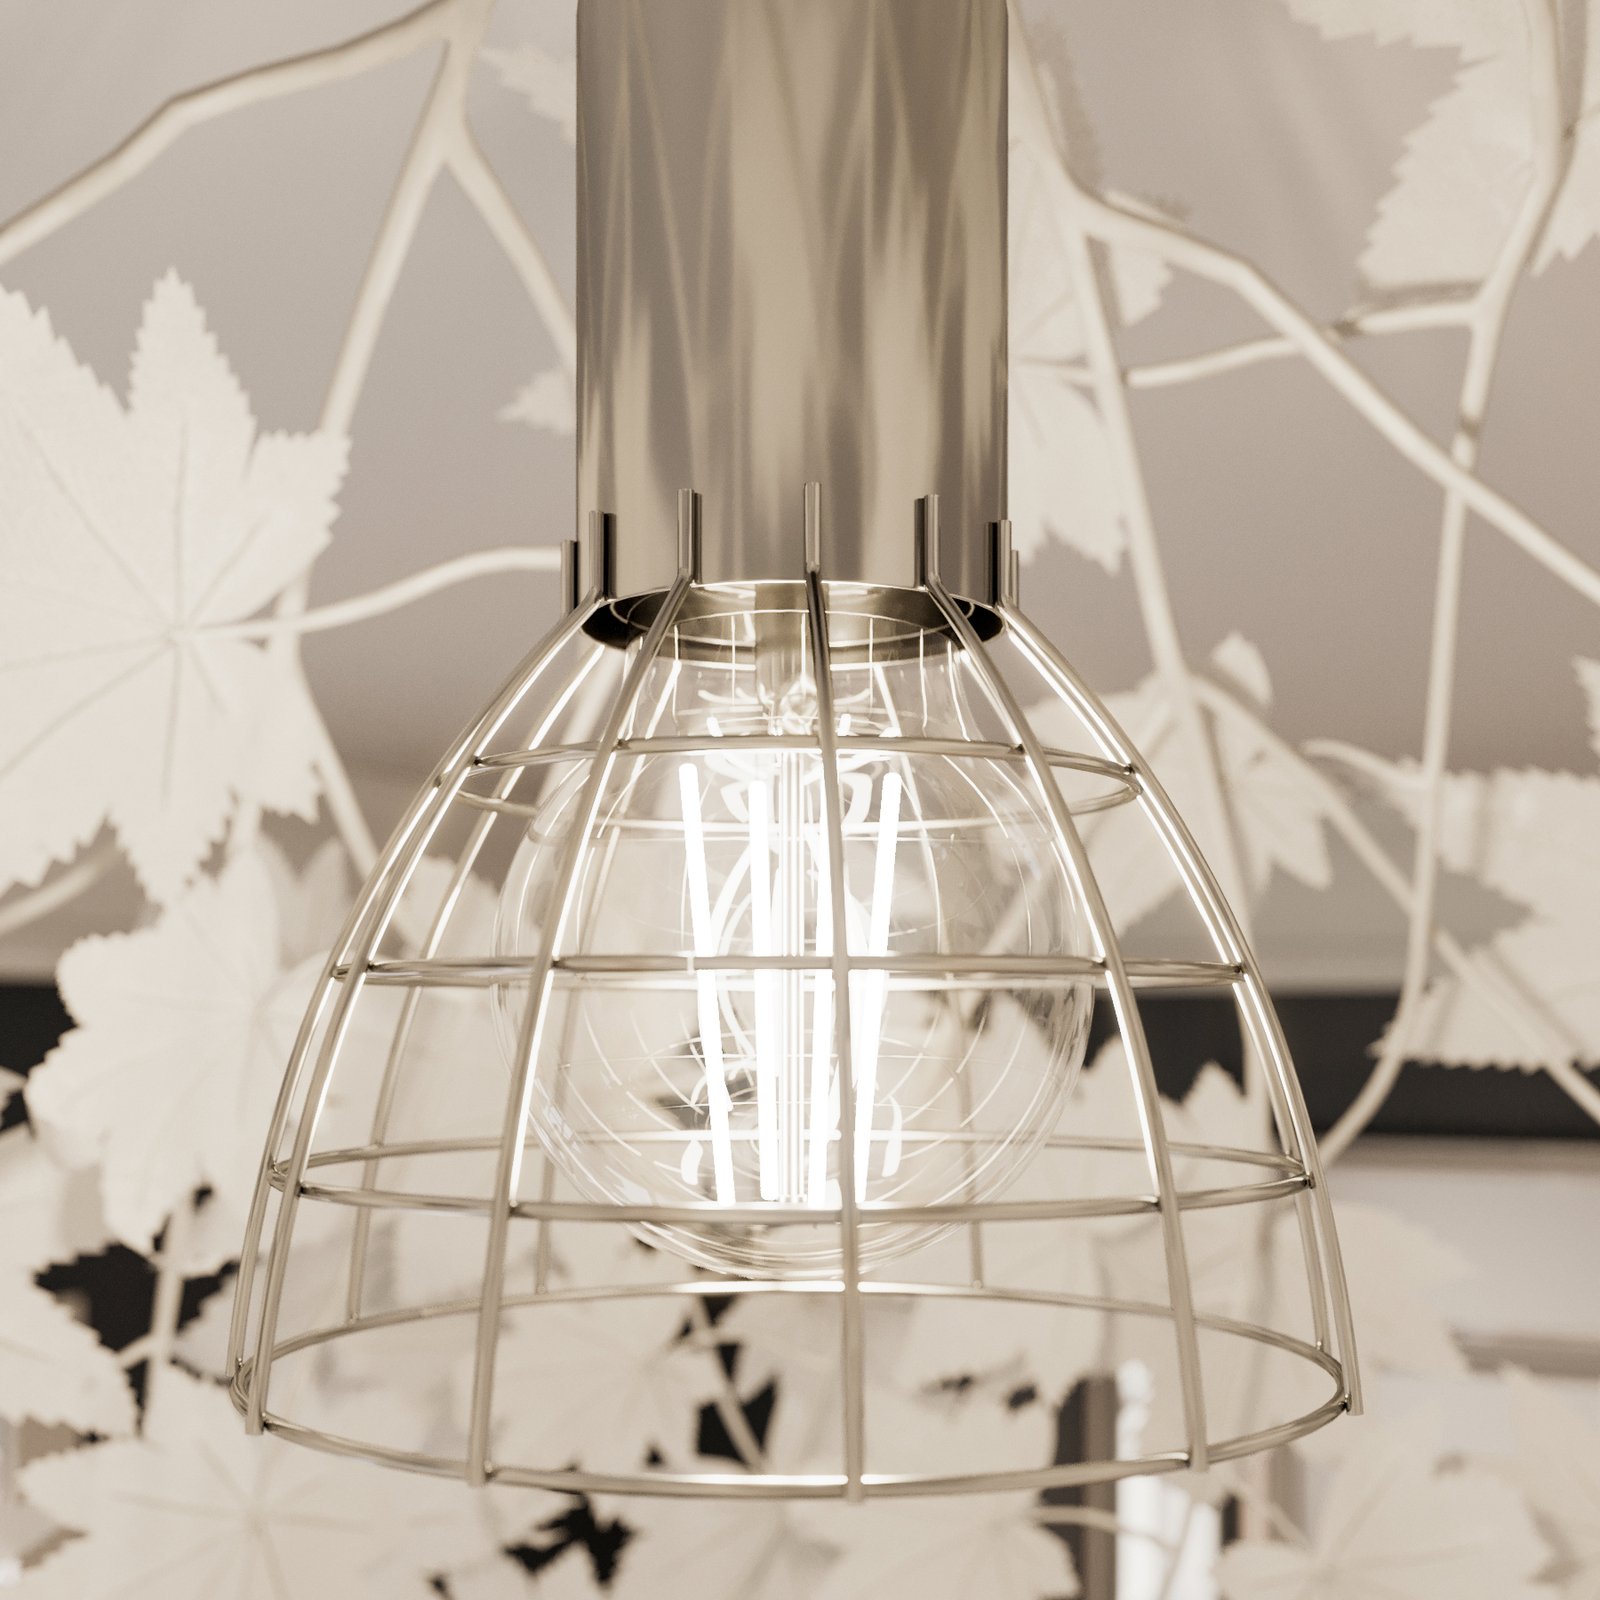 Lampa sufitowa Maple z pięknym wzorem w liście